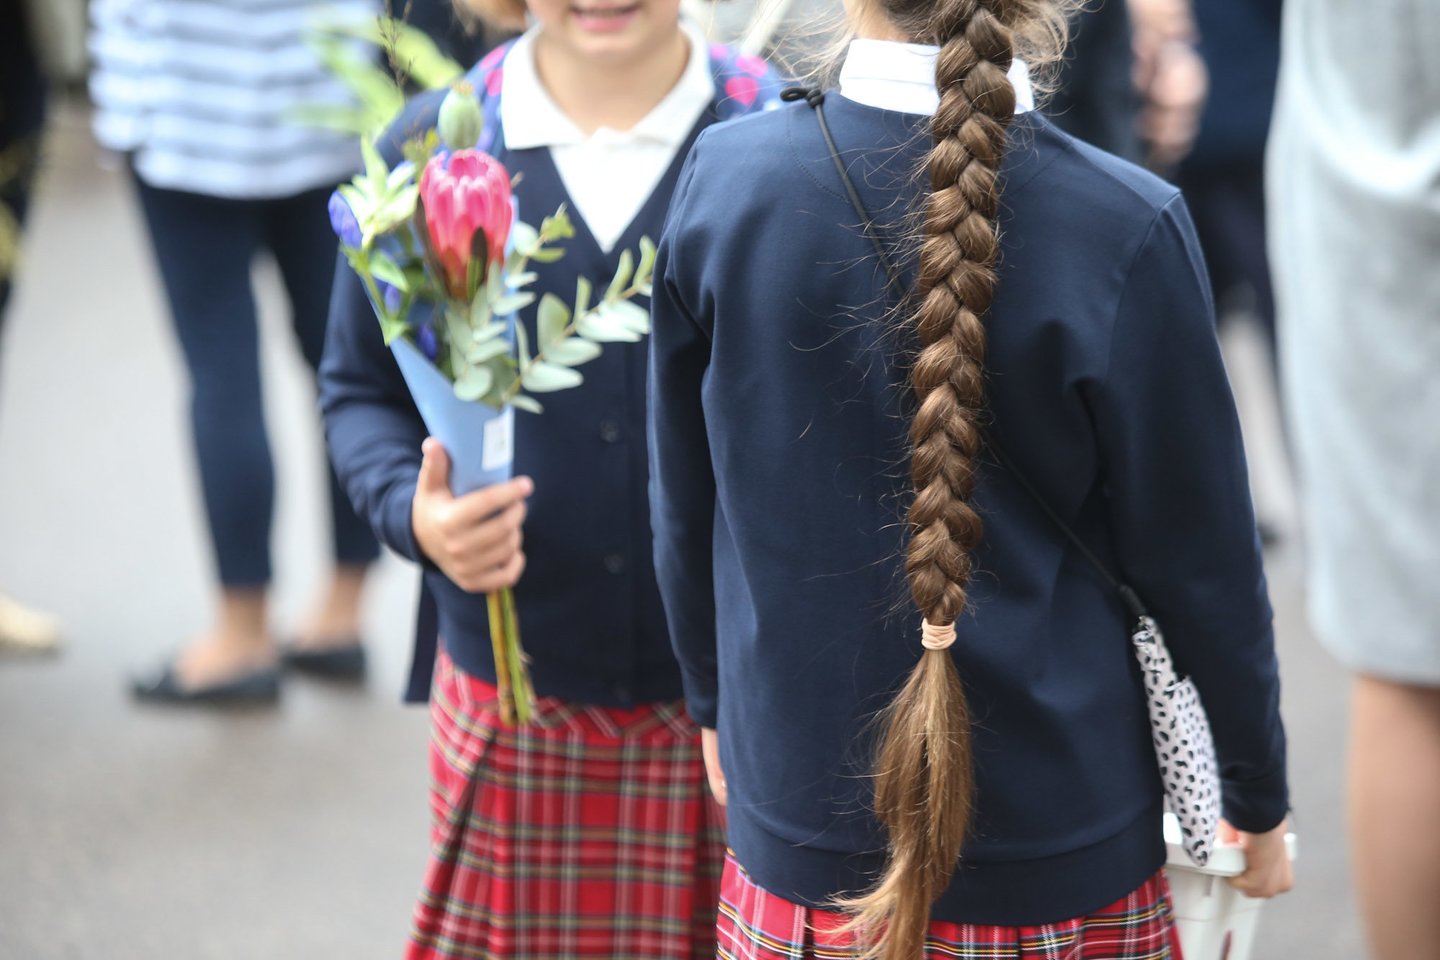  Nuo rugsėjo 1-osios Lietuvoje į mokyklas grįžta ne visi vaikai: tokį variantą renkasi trijų kategorijų šeimos.<br> R.Danisevičiaus nuotr.